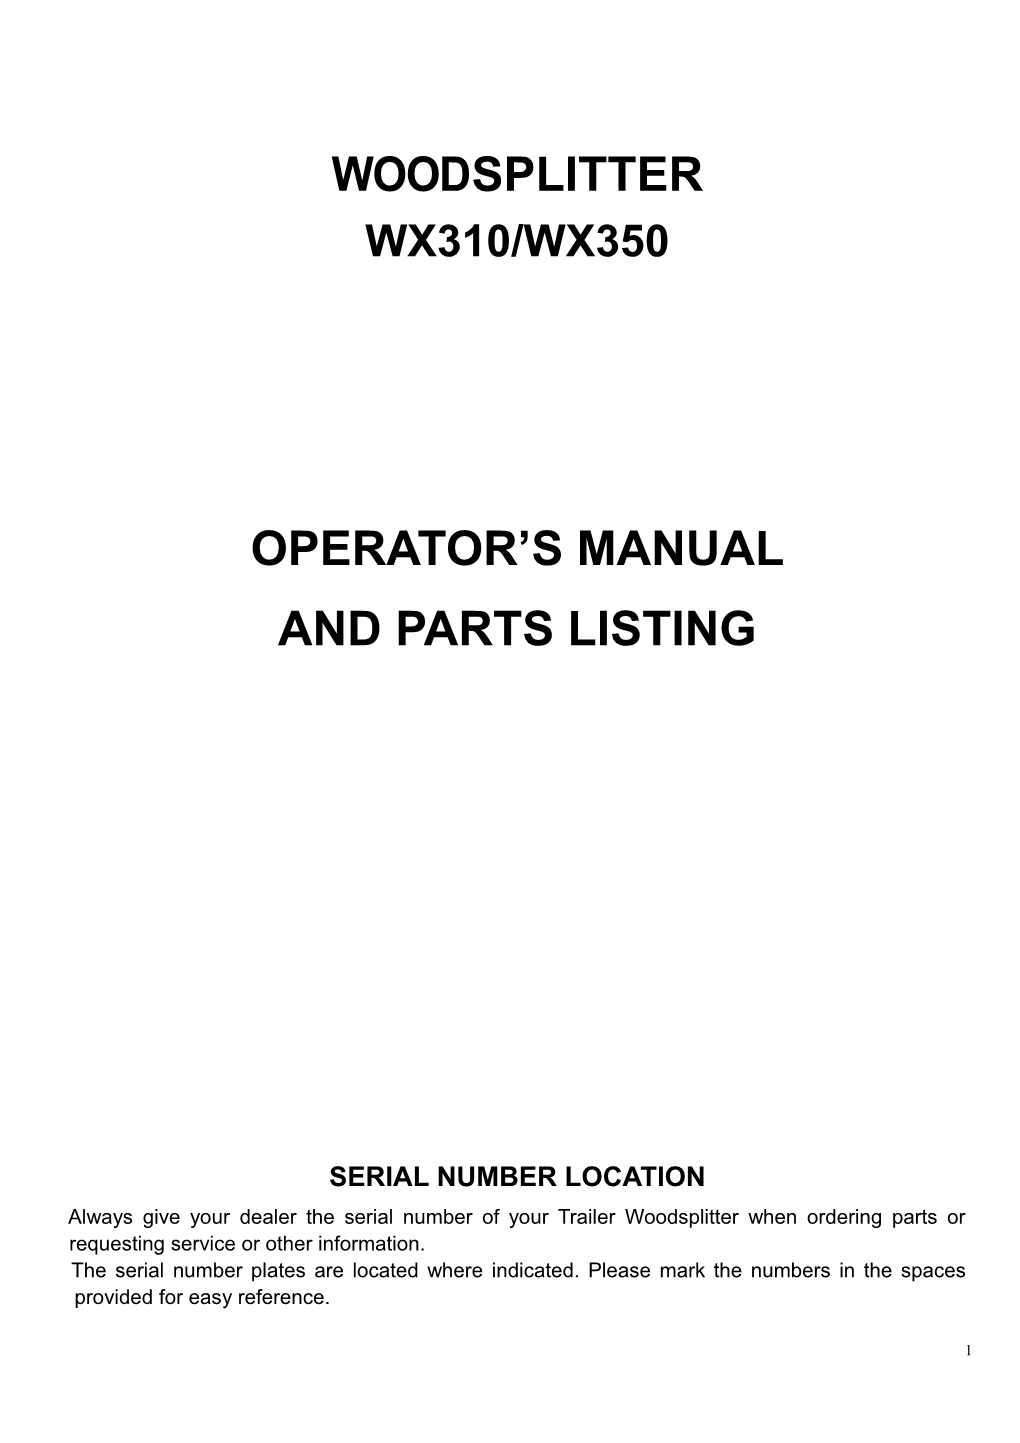 Operator S Manual